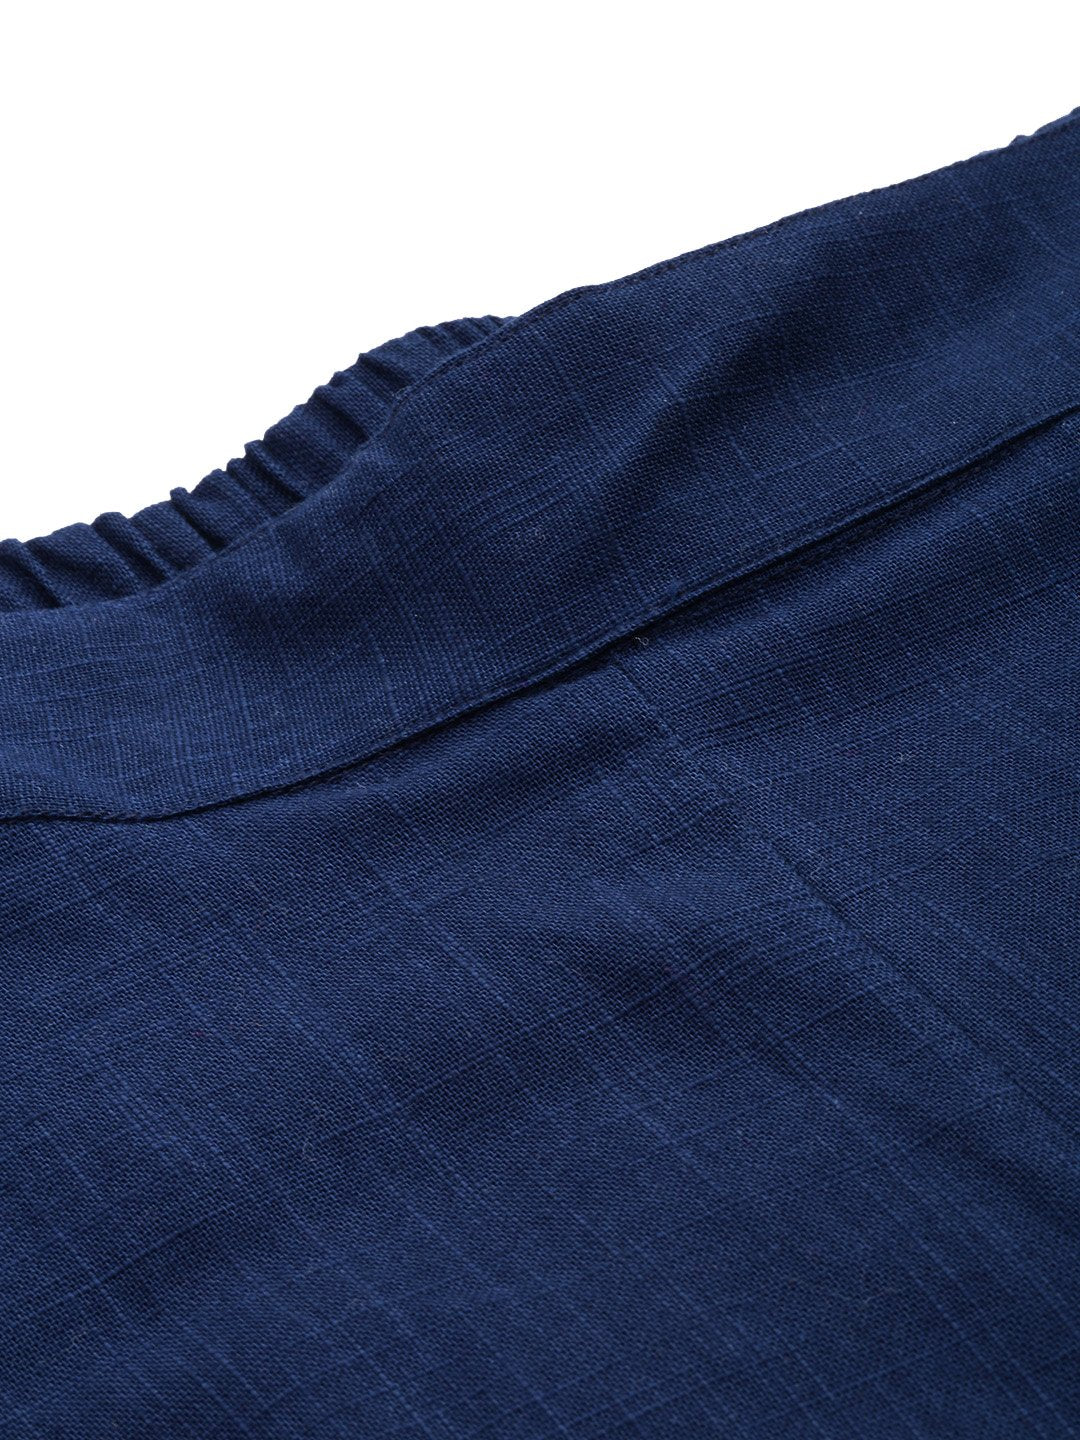 Women's Blue Cotton Trouser - Divena